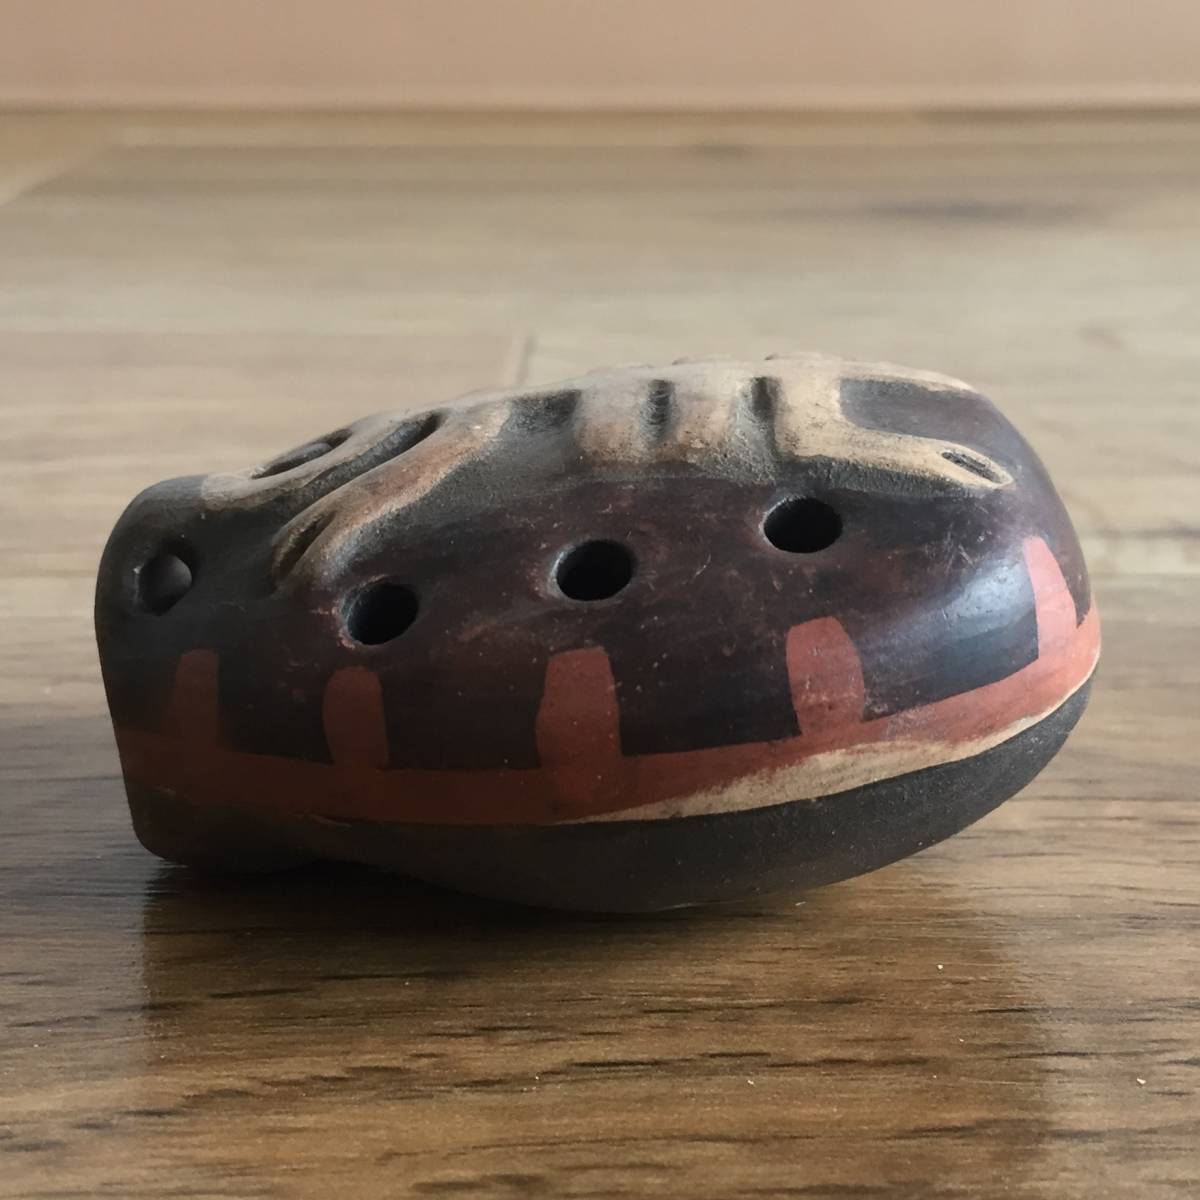  Vintage окарина дудка флейта Южная Америка Chile Chilean Spirit Ocarina раса народные товары народные обычаи музыкальные инструменты керамика керамика керамика примерно 6.5cm×5.3cm×3.5cm